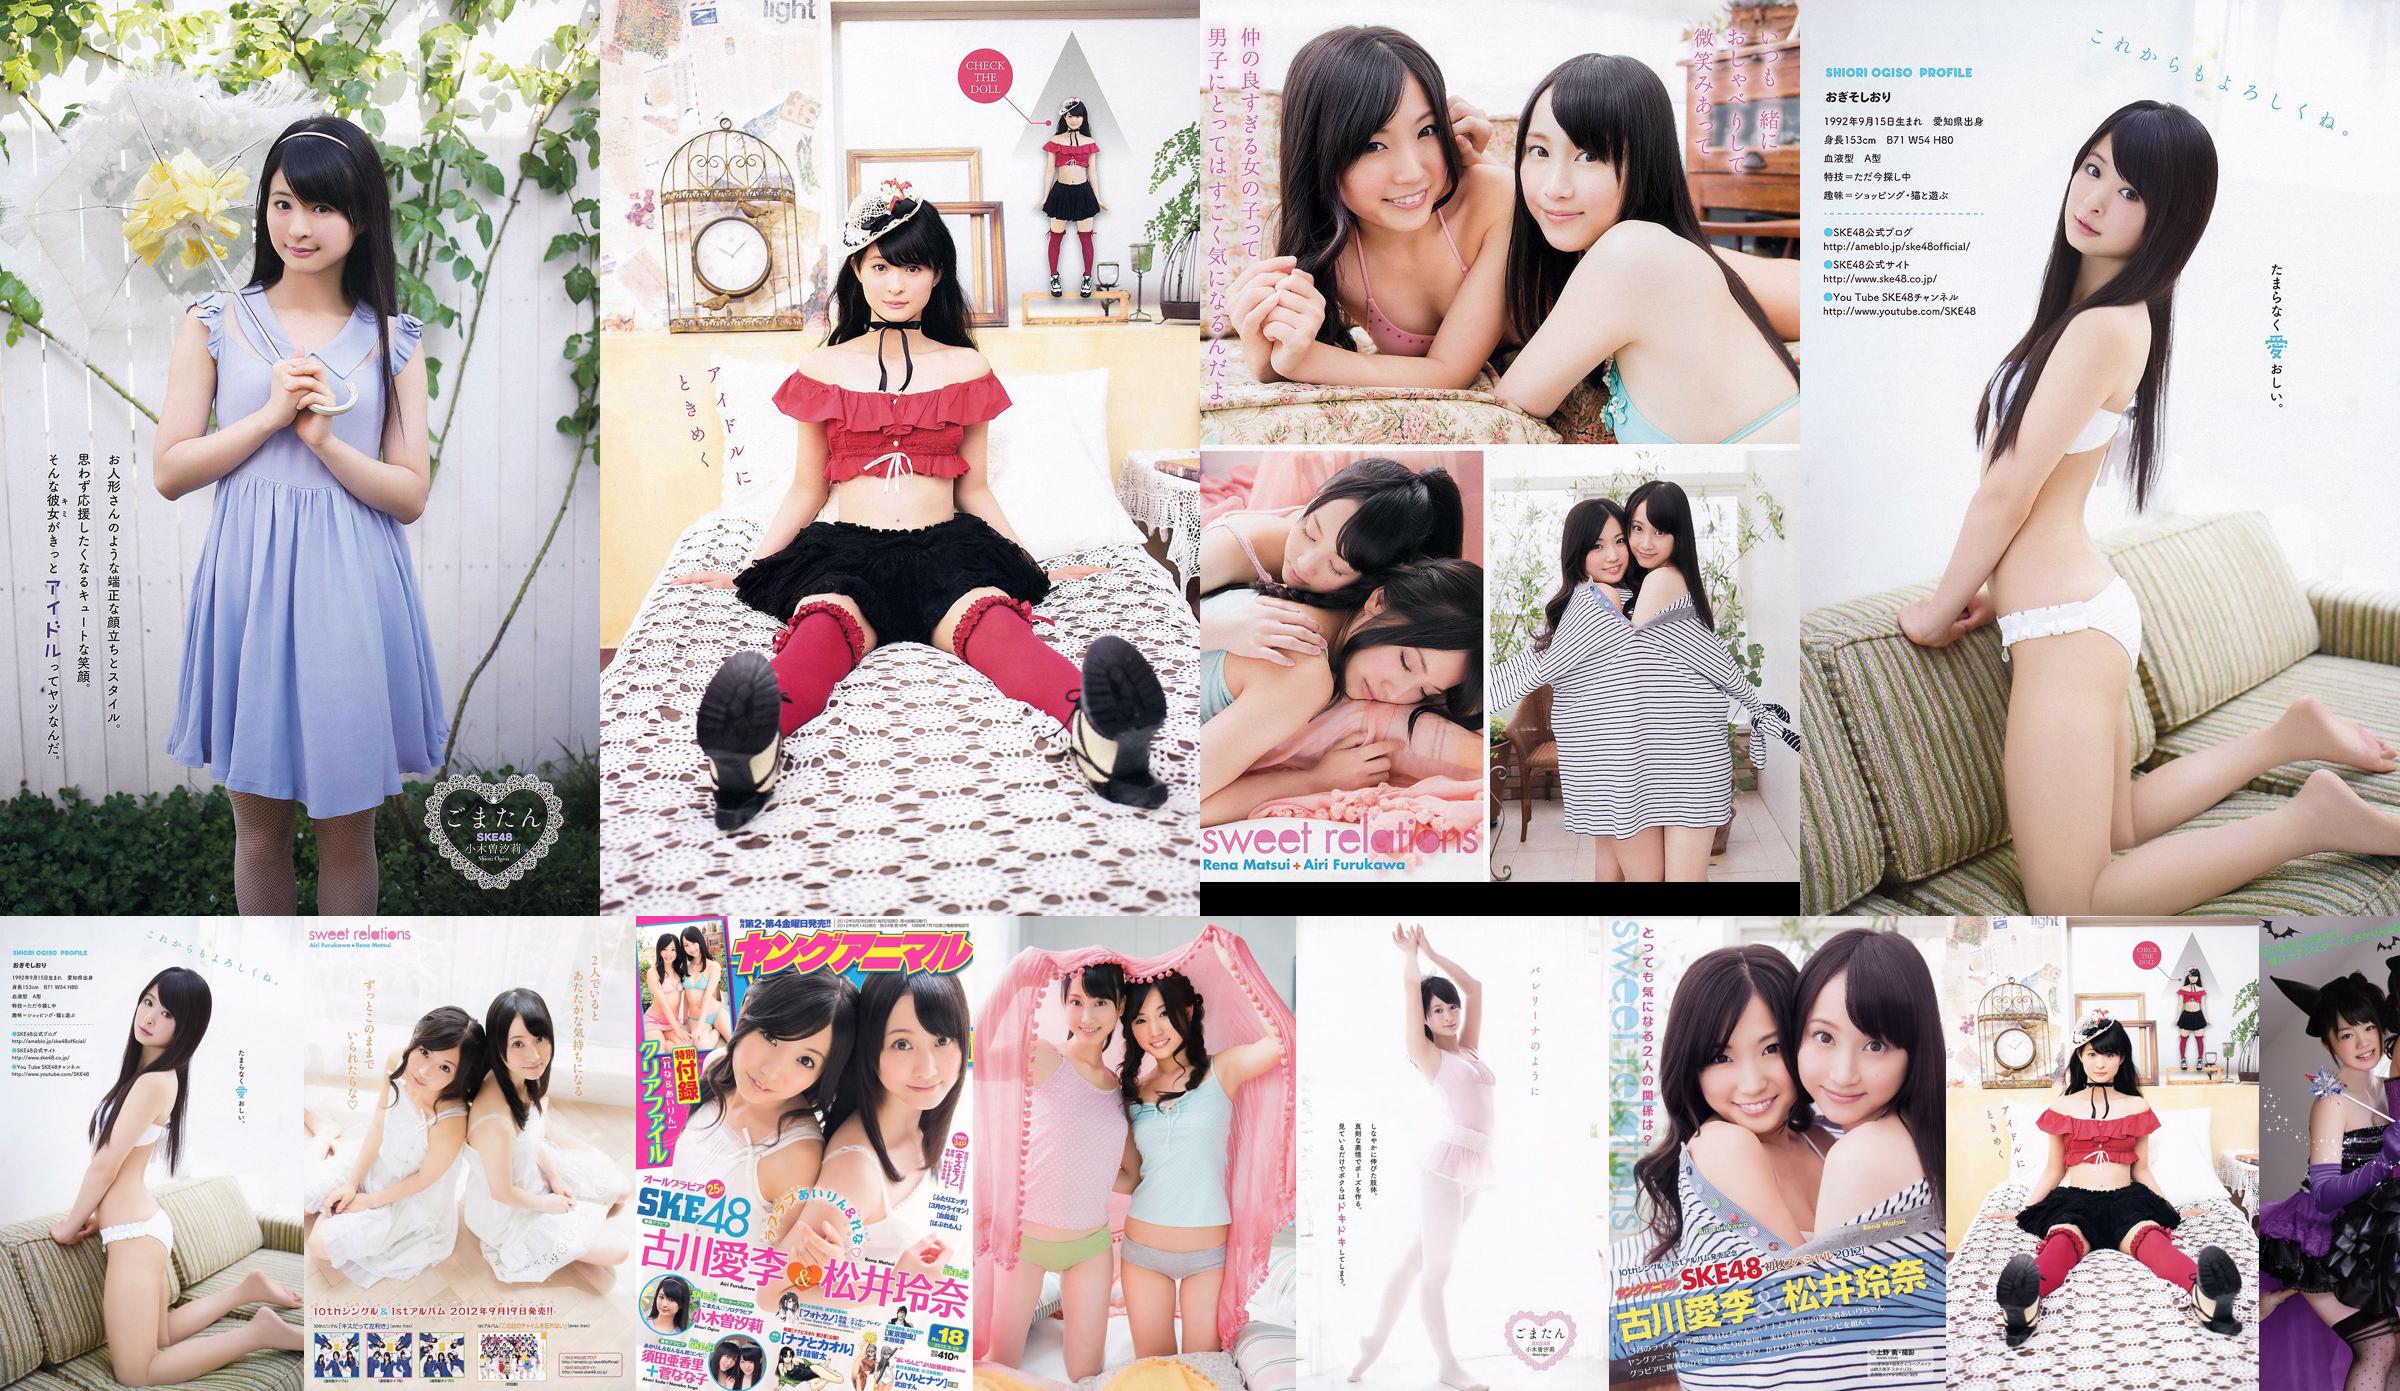 Ai Li Furukawa, Rena Matsui, Sasa Ogi, Aikari Suda [Young Animal] 2012 No.18 Photo Magazine No.986914 หน้า 1